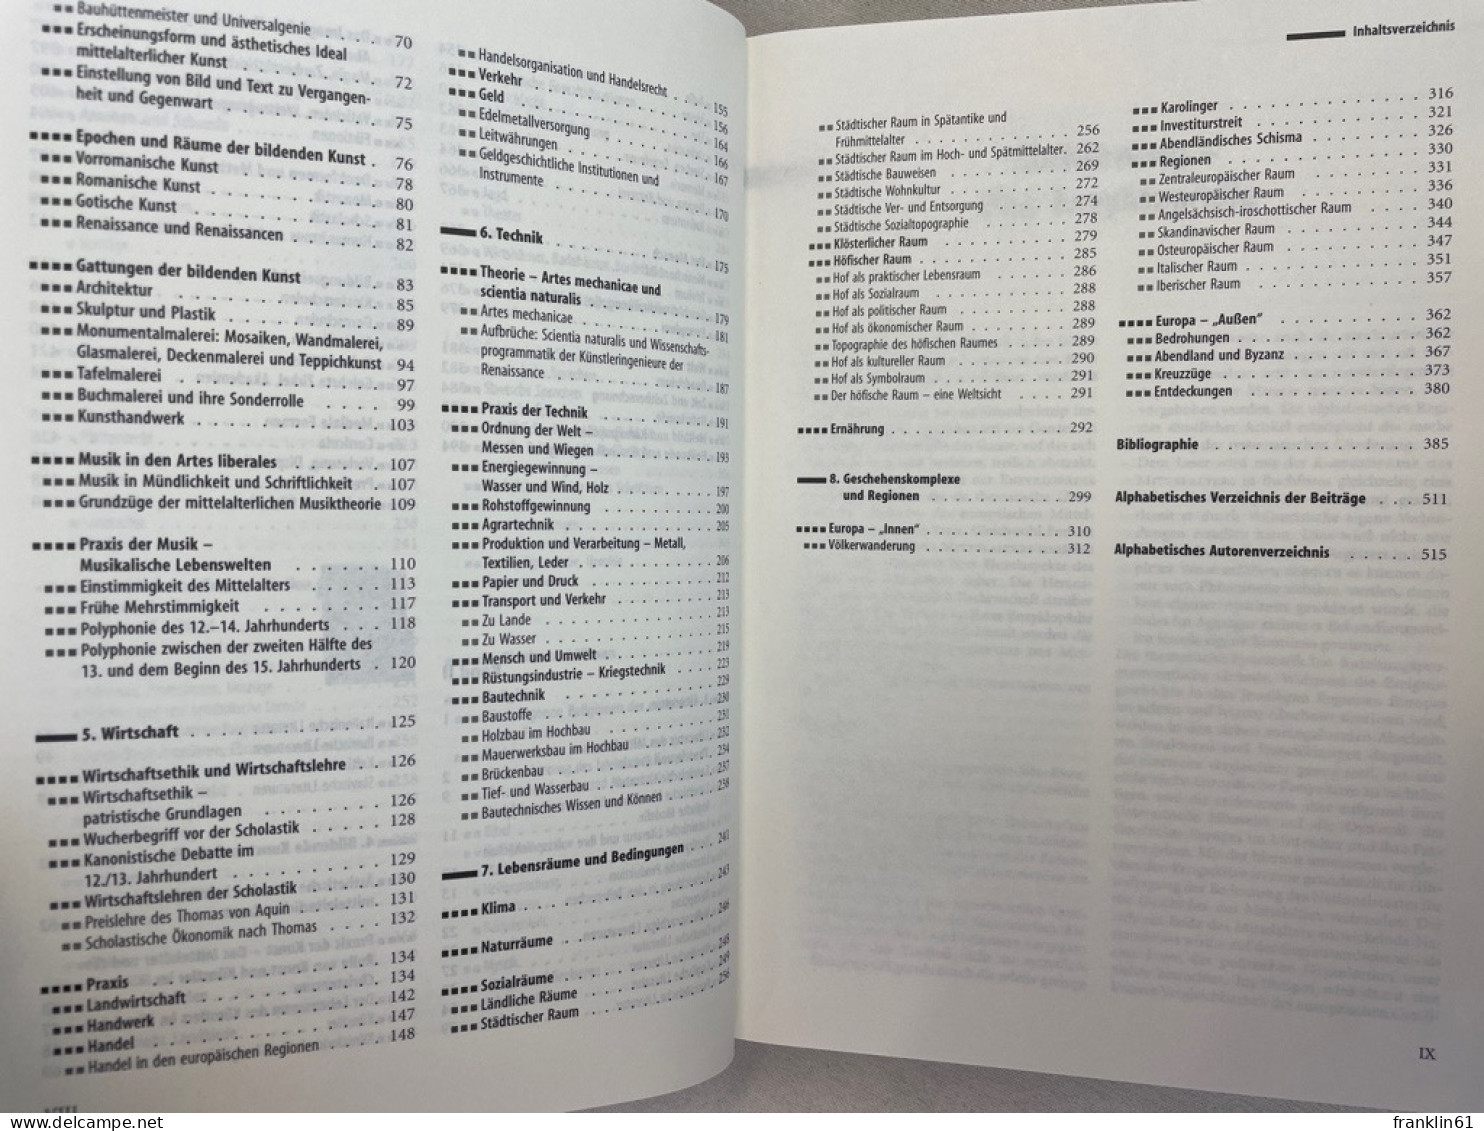 Enzyklopädie des Mittelalters. Band 1 und 2 KOMPLETT.